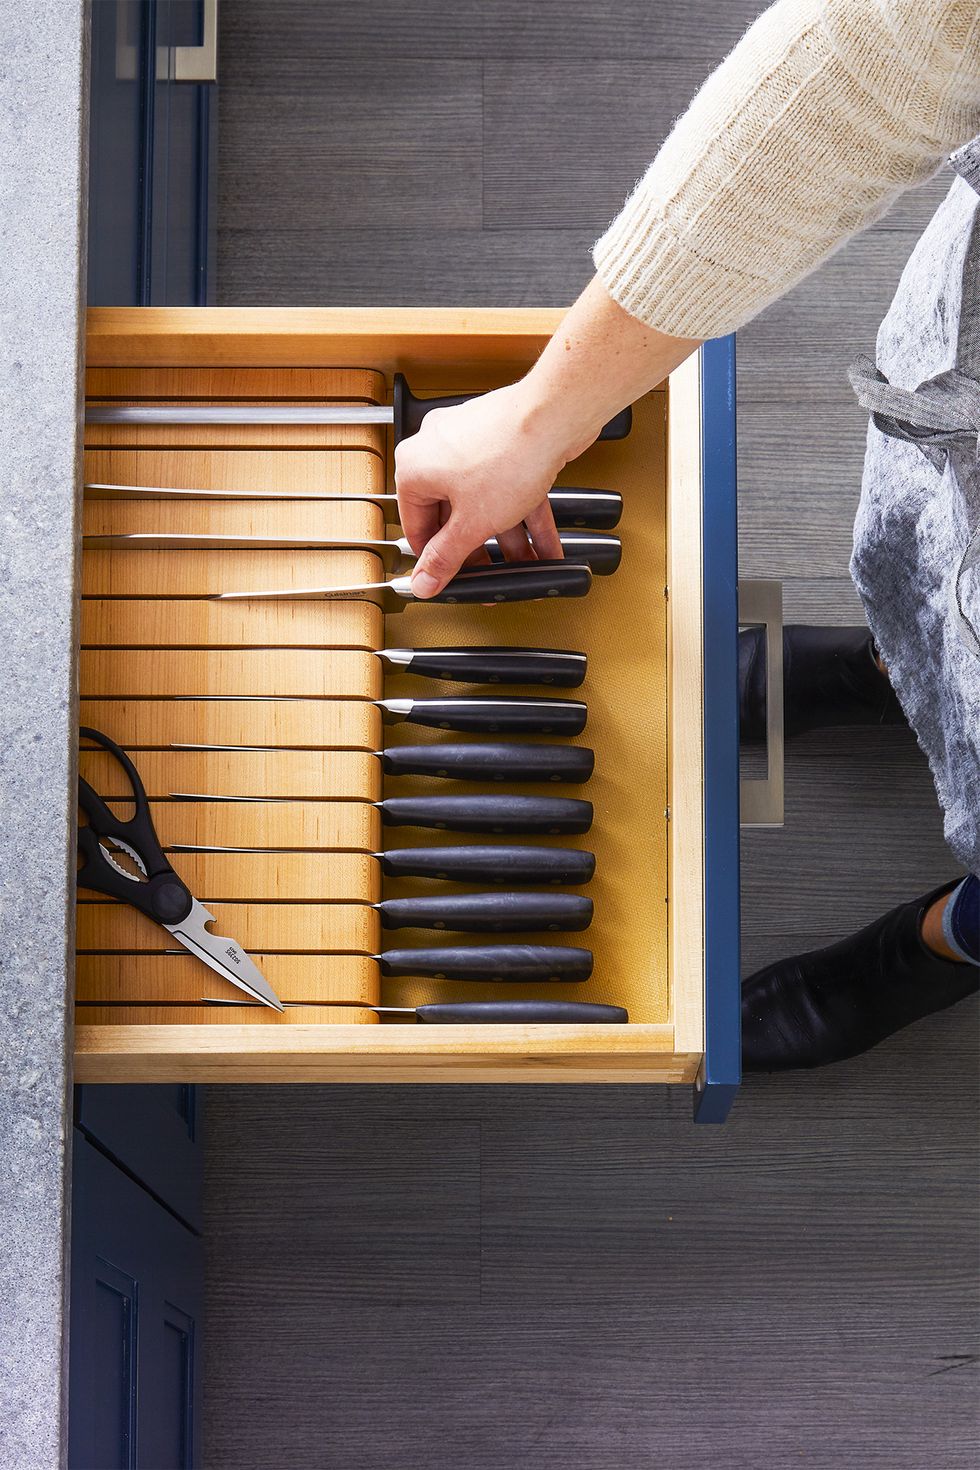 Bổ sung vào ngăn kéo một không gian dành riêng cho các loại dao đủ kích cỡ và công dụng như thế này sẽ giúp bạn đảm bảo tính an toàn cũng như tiết kiệm không gian hơn so với việc bày trên mặt bàn bếp.